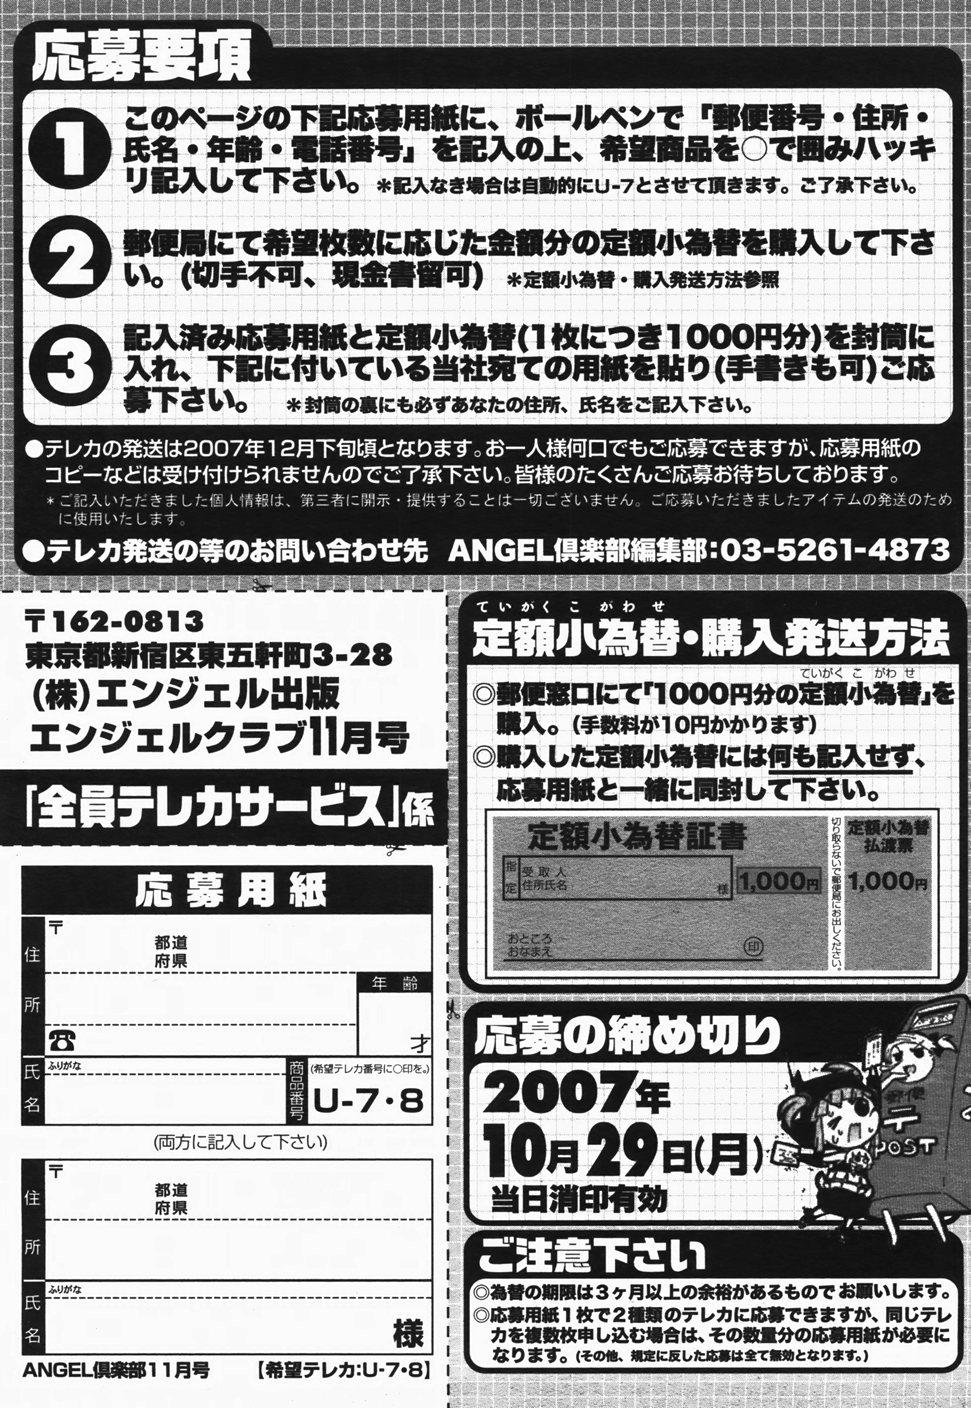 ANGEL Club 2007-11 199